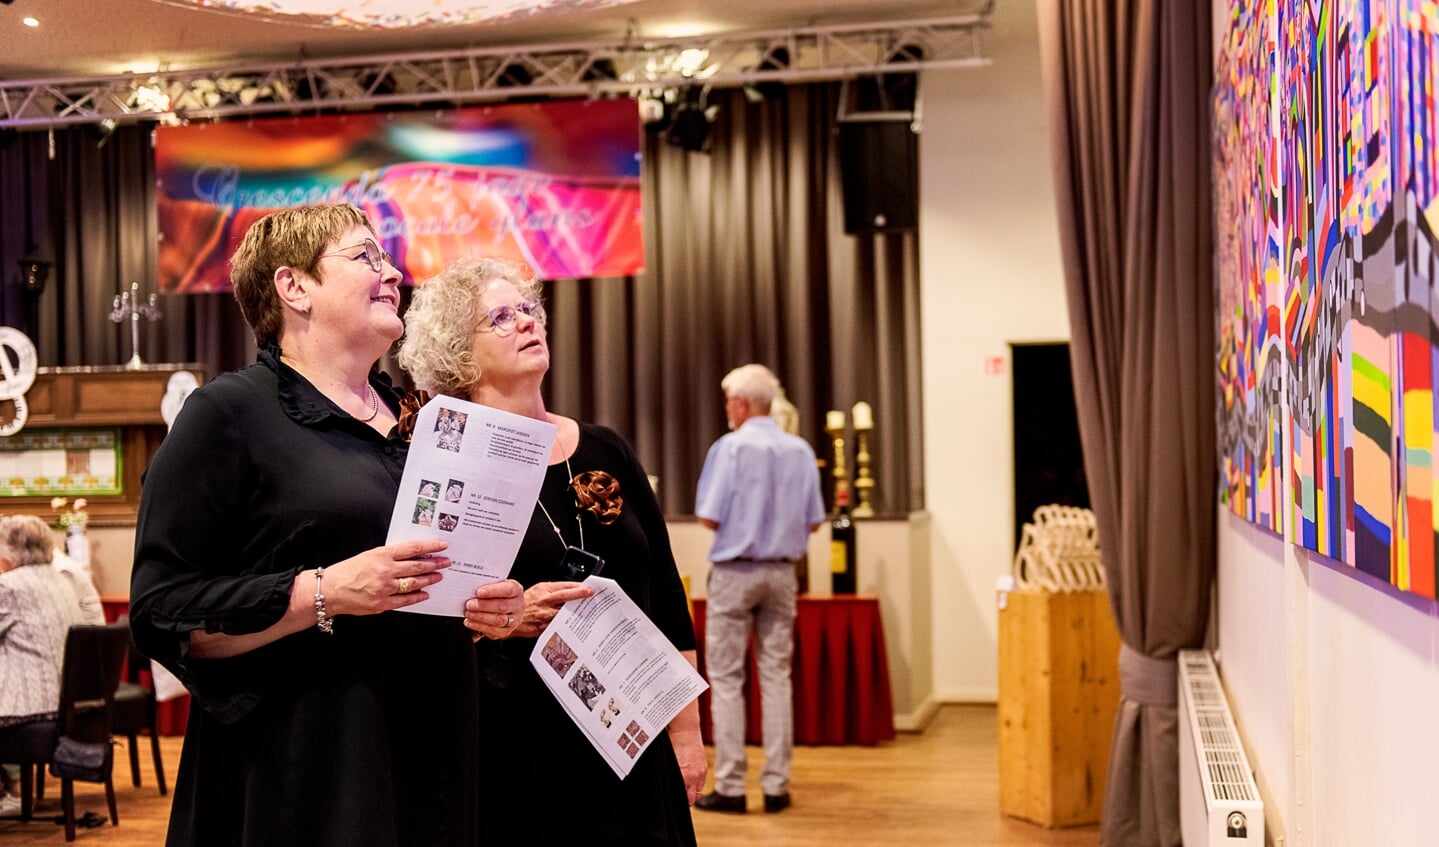 Bezoekers van de expositie, ter gelegenheid van het 75-jarig bestaan van Zangkoor Crescendo uit Doenrade, bekijken met interesse het kleurrijke vierluik van Paul Smeets.